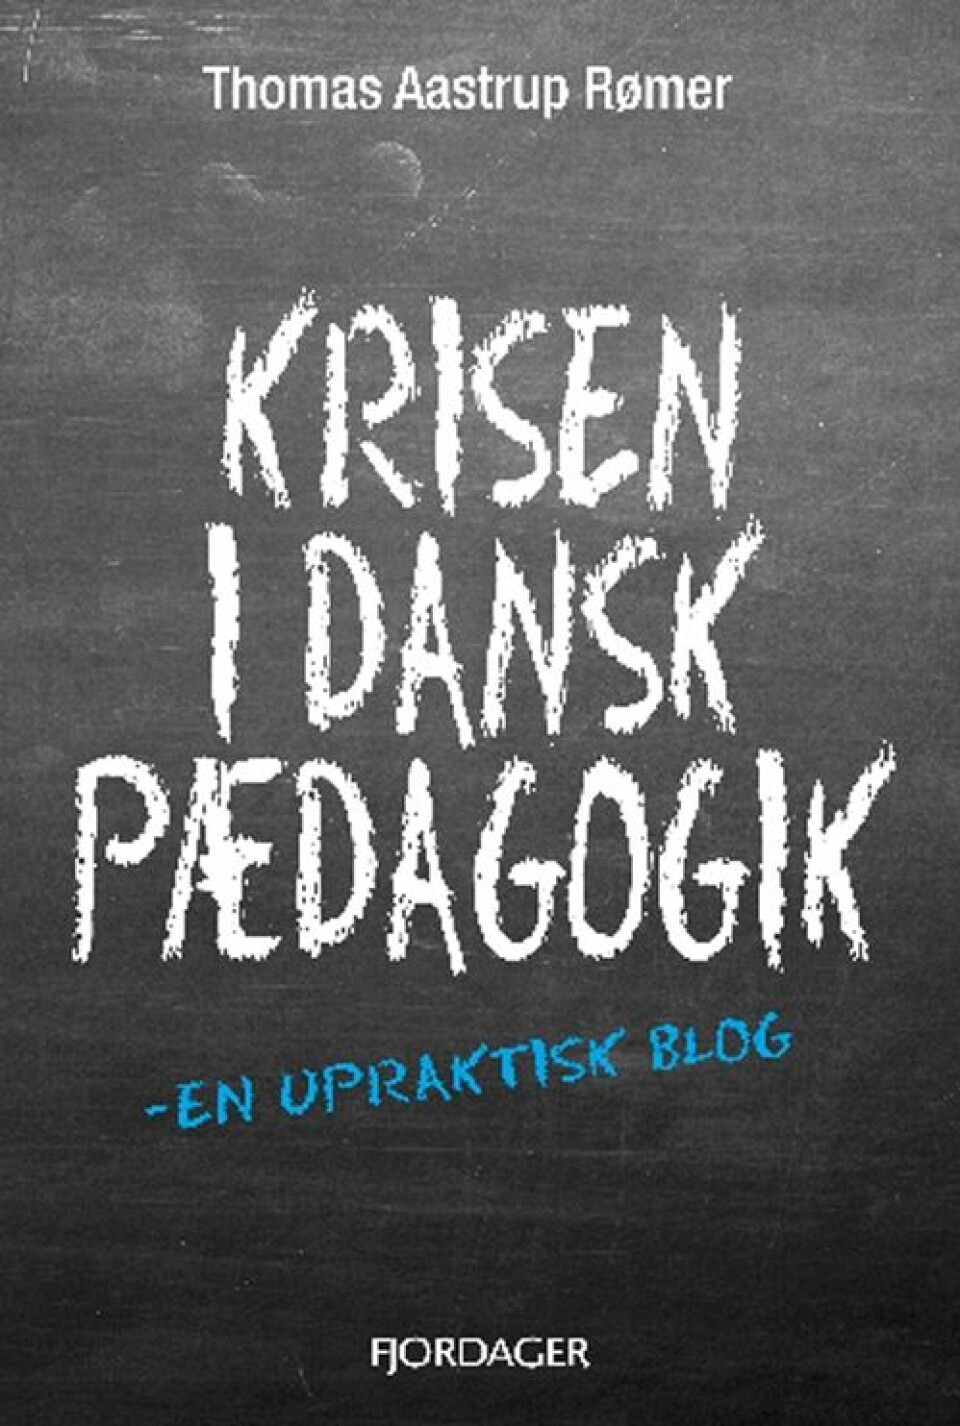 Krisen i dansk pædagogik